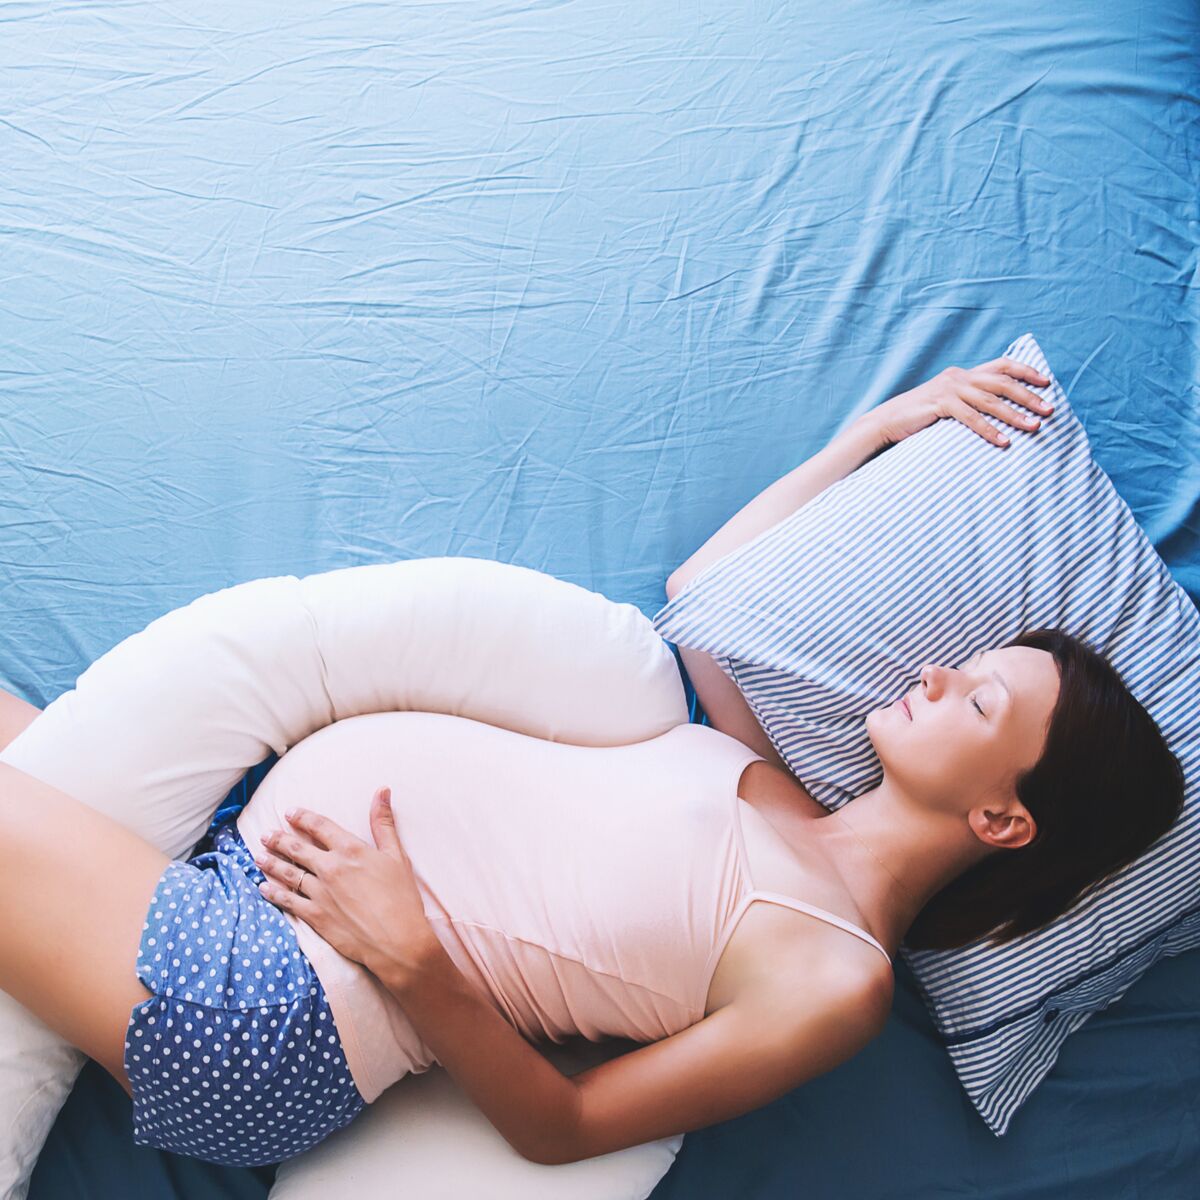 Coussin de grossesse : Avantages de l'utiliser par la femme enceinte !